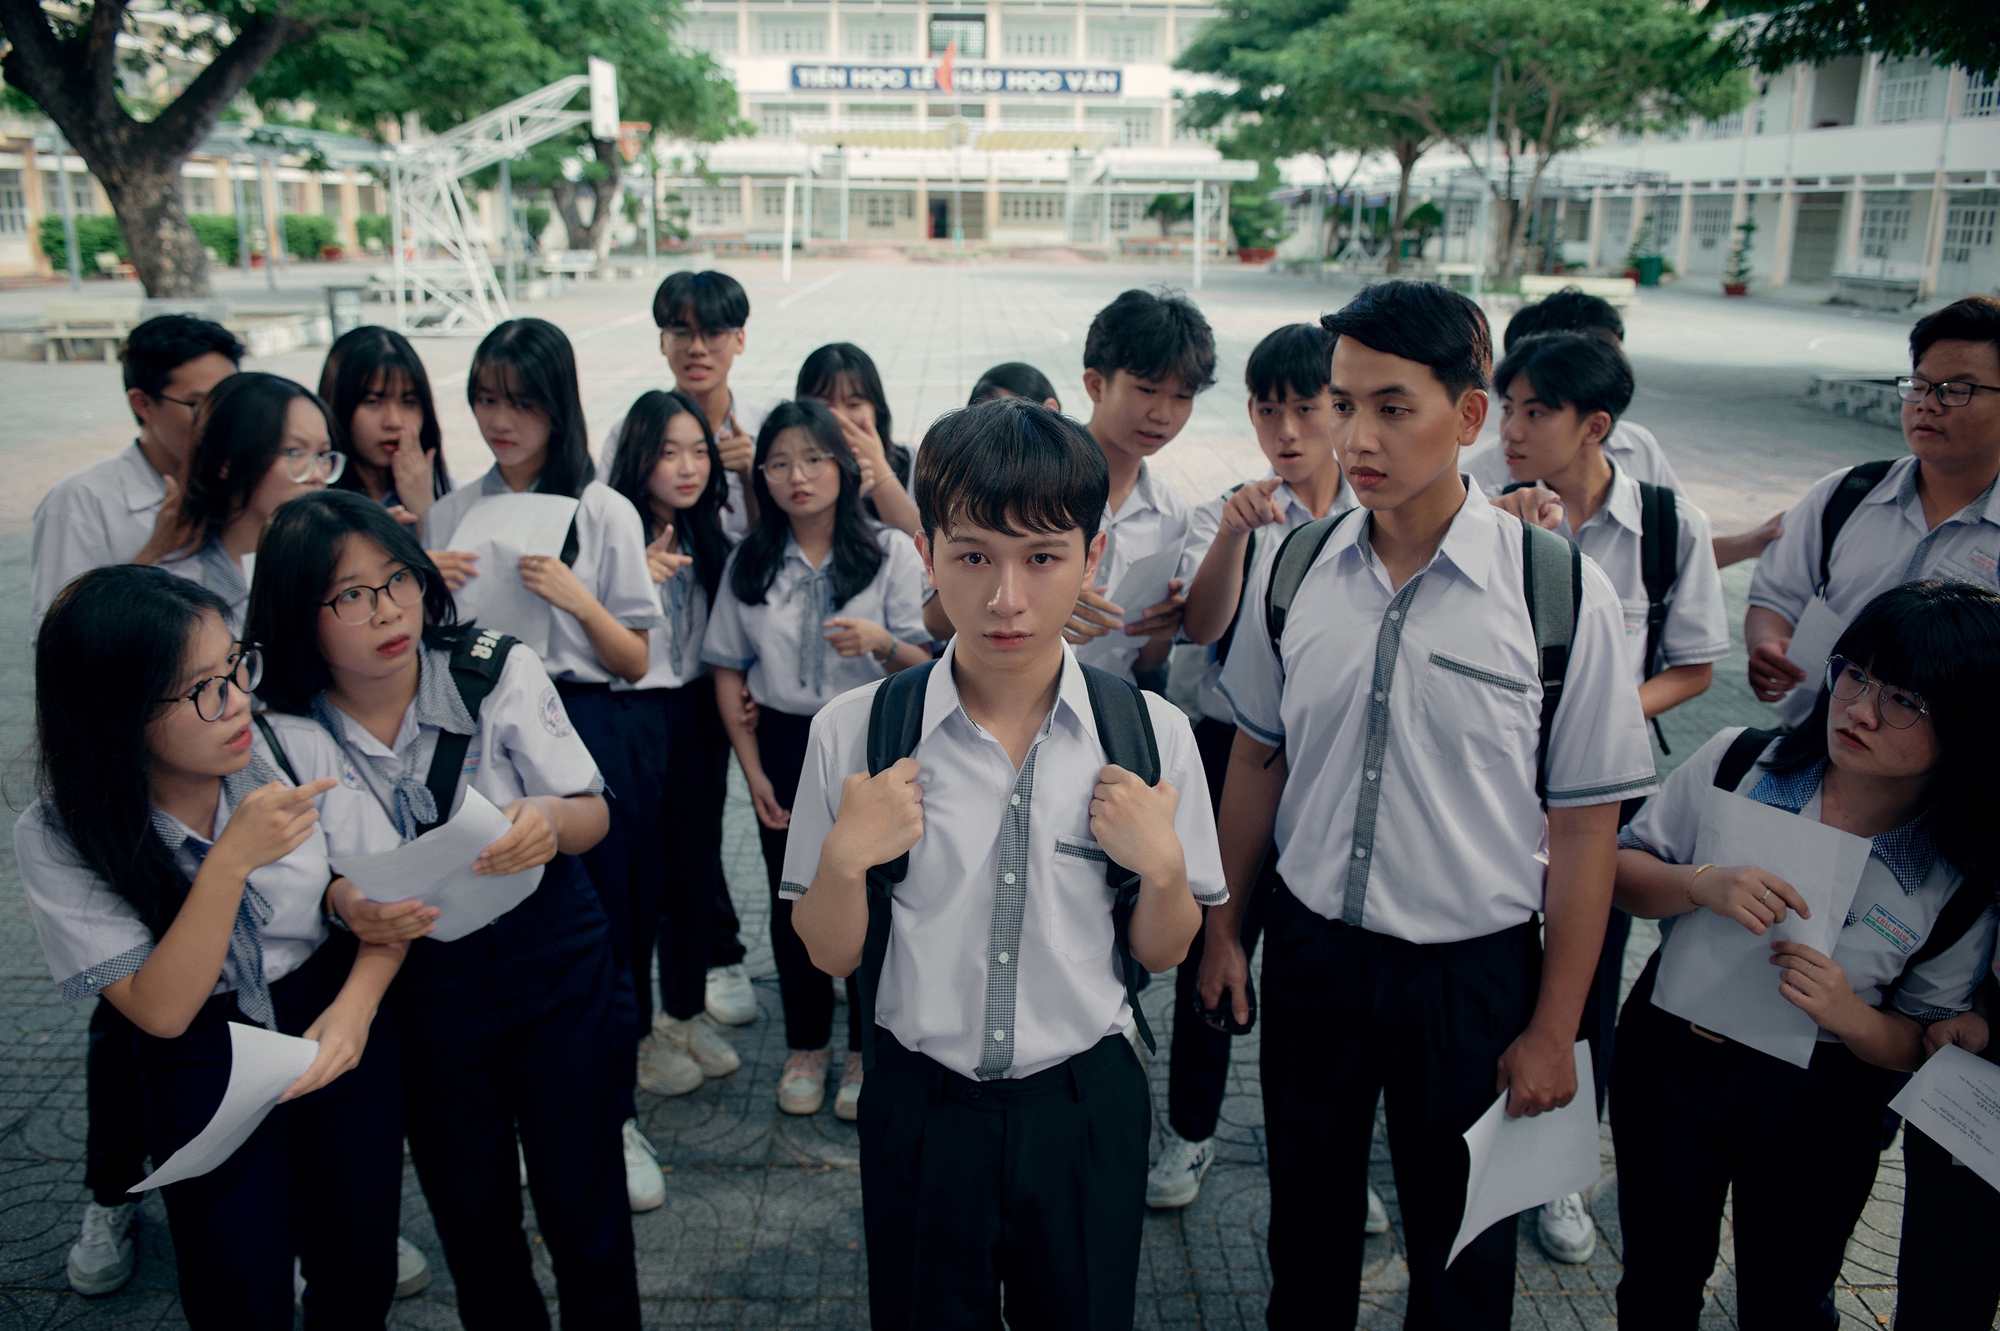     Vấn nạn bạo lực học đường trong phim ca nhạc của Đỗ Hoàng Dương - Ảnh 1.